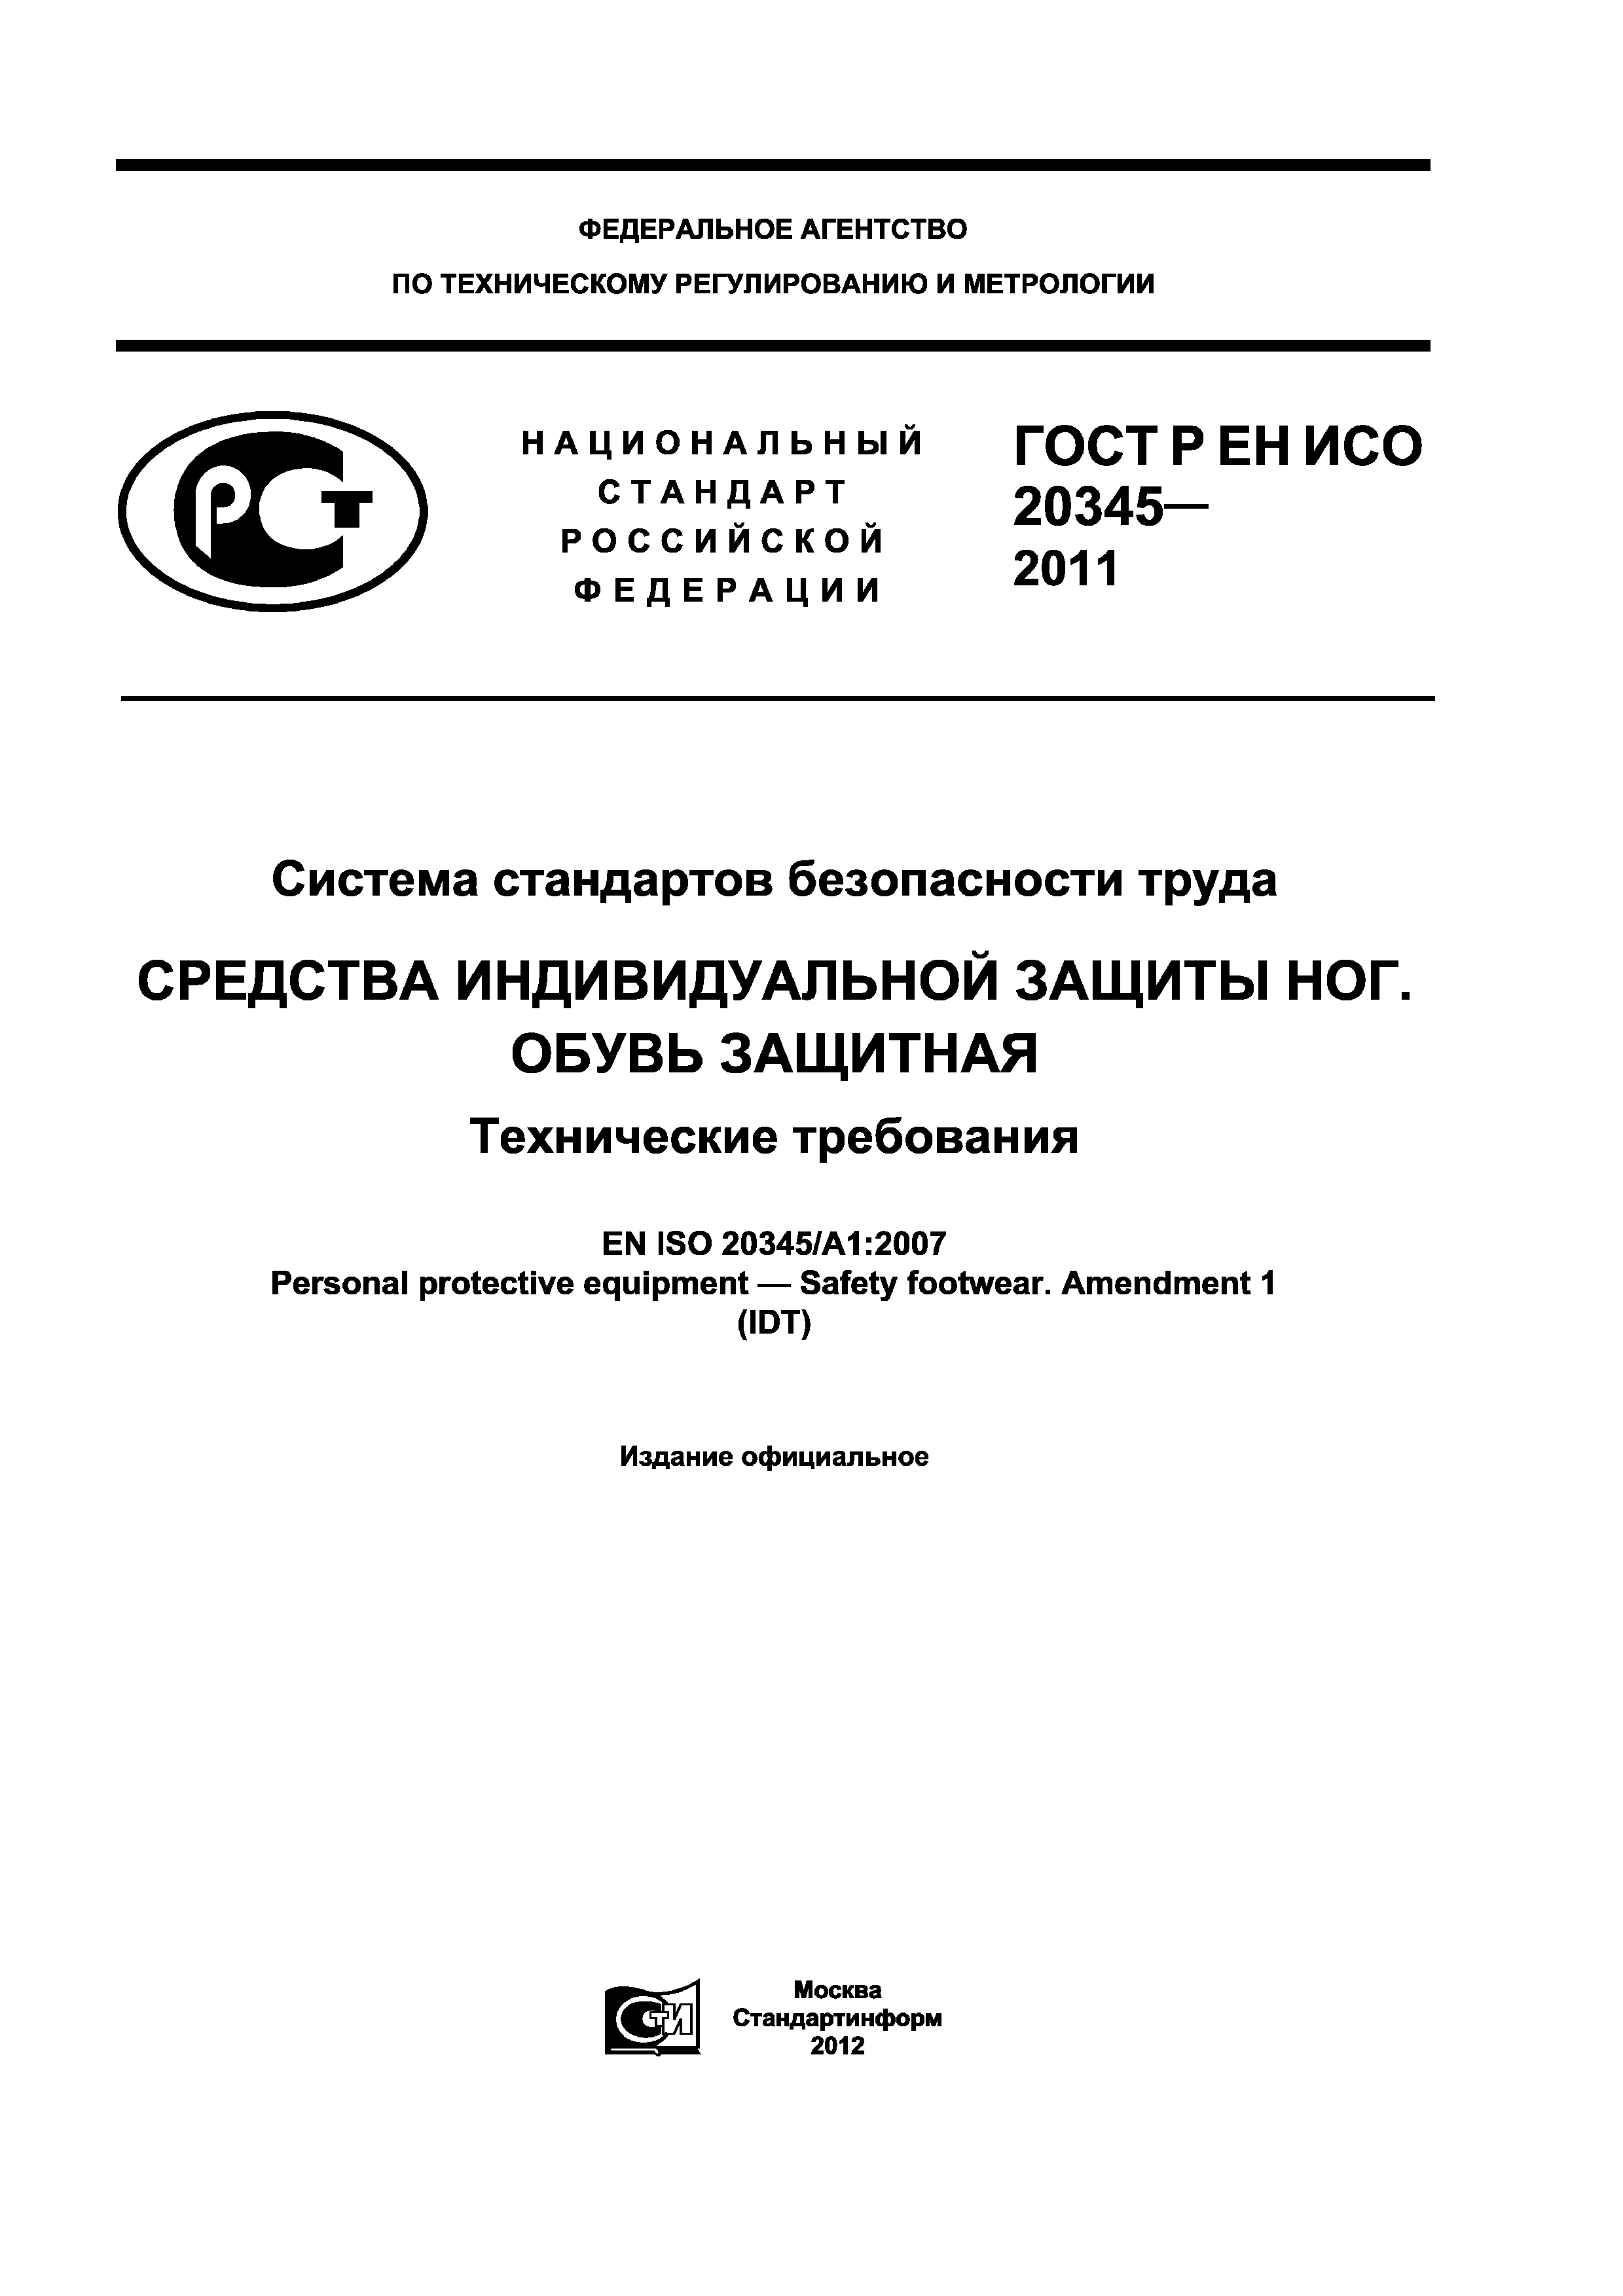 ГОСТ Р ЕН ИСО 20345-2011